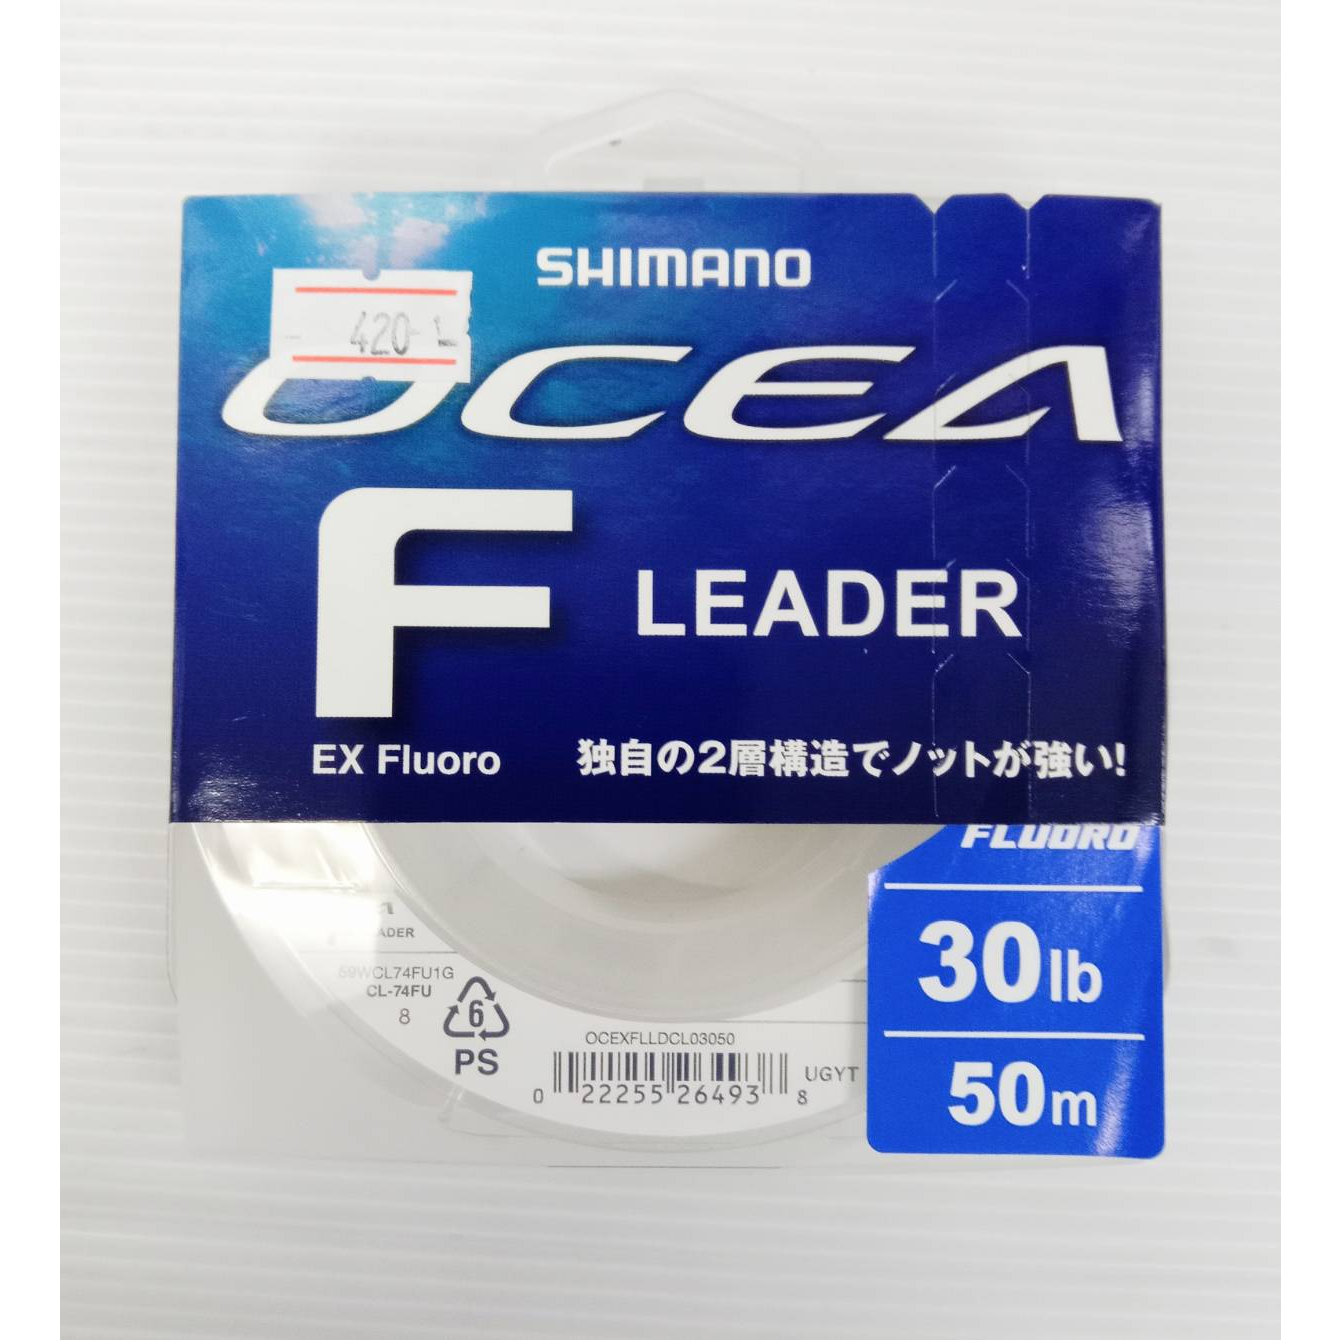 สายช็อค-shimano-ocea-f-lerder-ex-ฟลูโล-100-made-in-japan